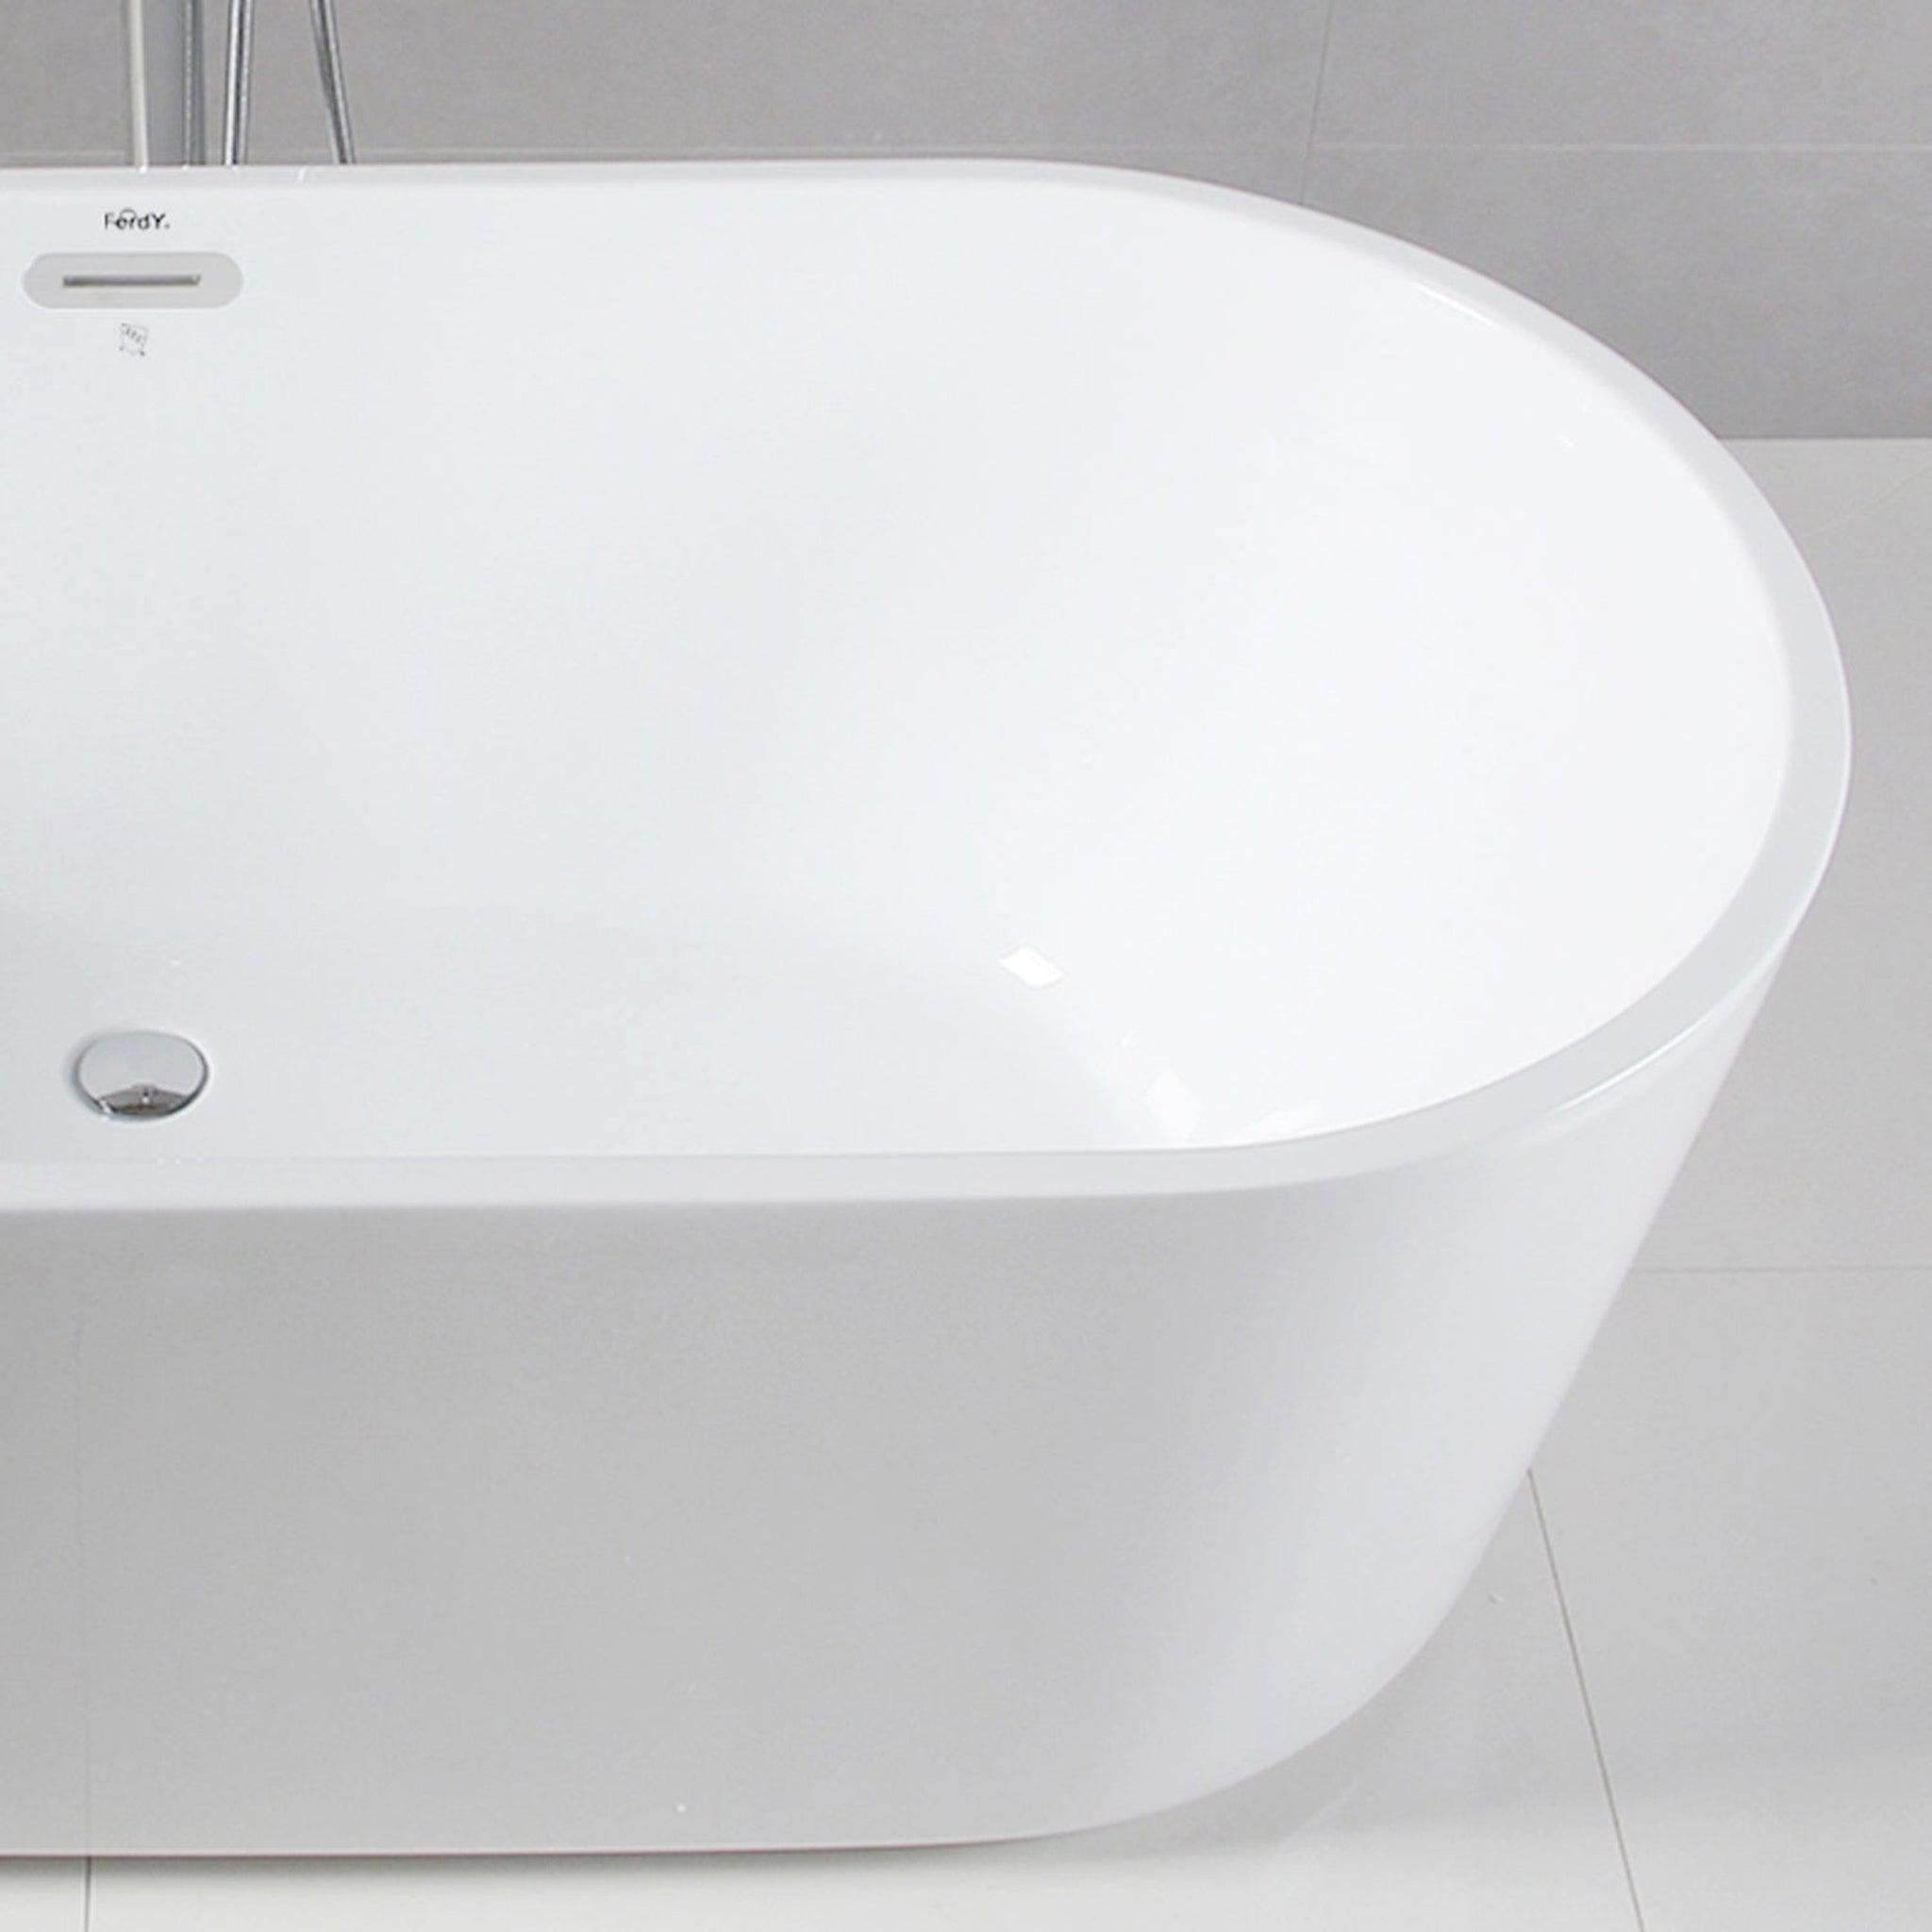 FT-AZ201 - ANZZI Sofi 5.6 ft. Center Drain Whirlpool and Air Bath Tub in  White